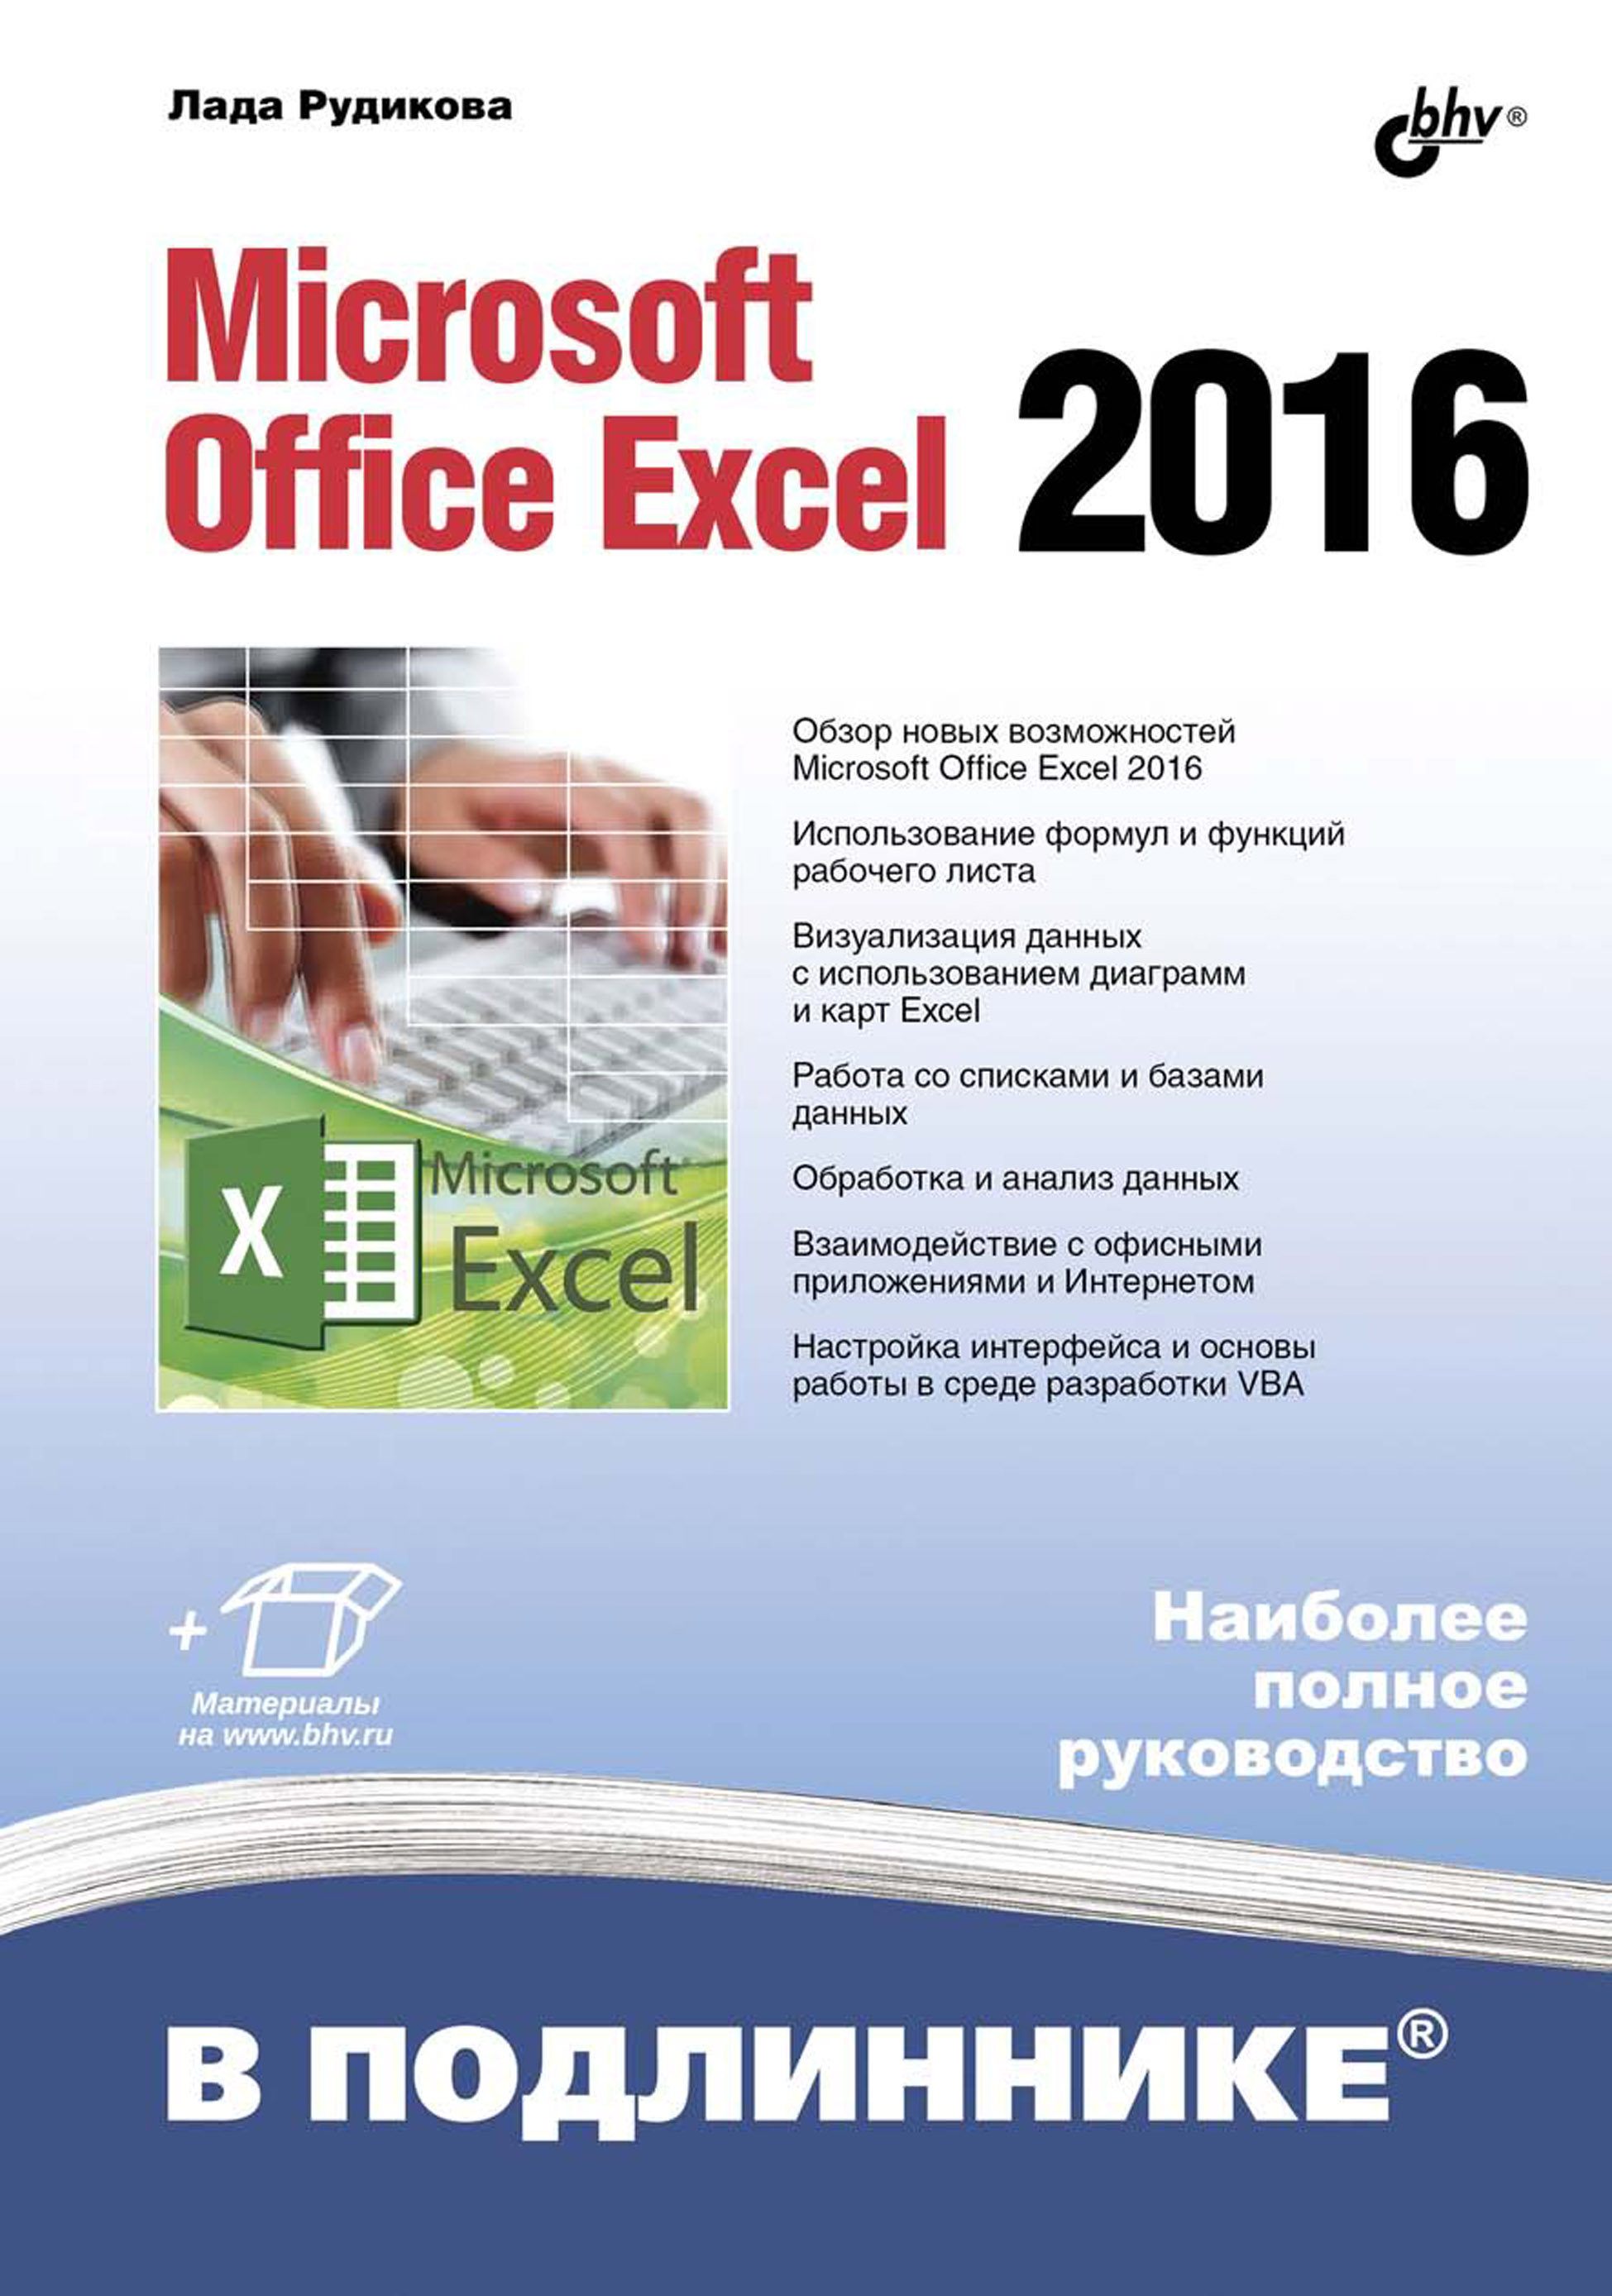 Книга В подлиннике. Наиболее полное руководство Microsoft Office Excel 2016 созданная Лада Рудикова может относится к жанру программы, руководства. Стоимость электронной книги Microsoft Office Excel 2016 с идентификатором 39288609 составляет 520.00 руб.